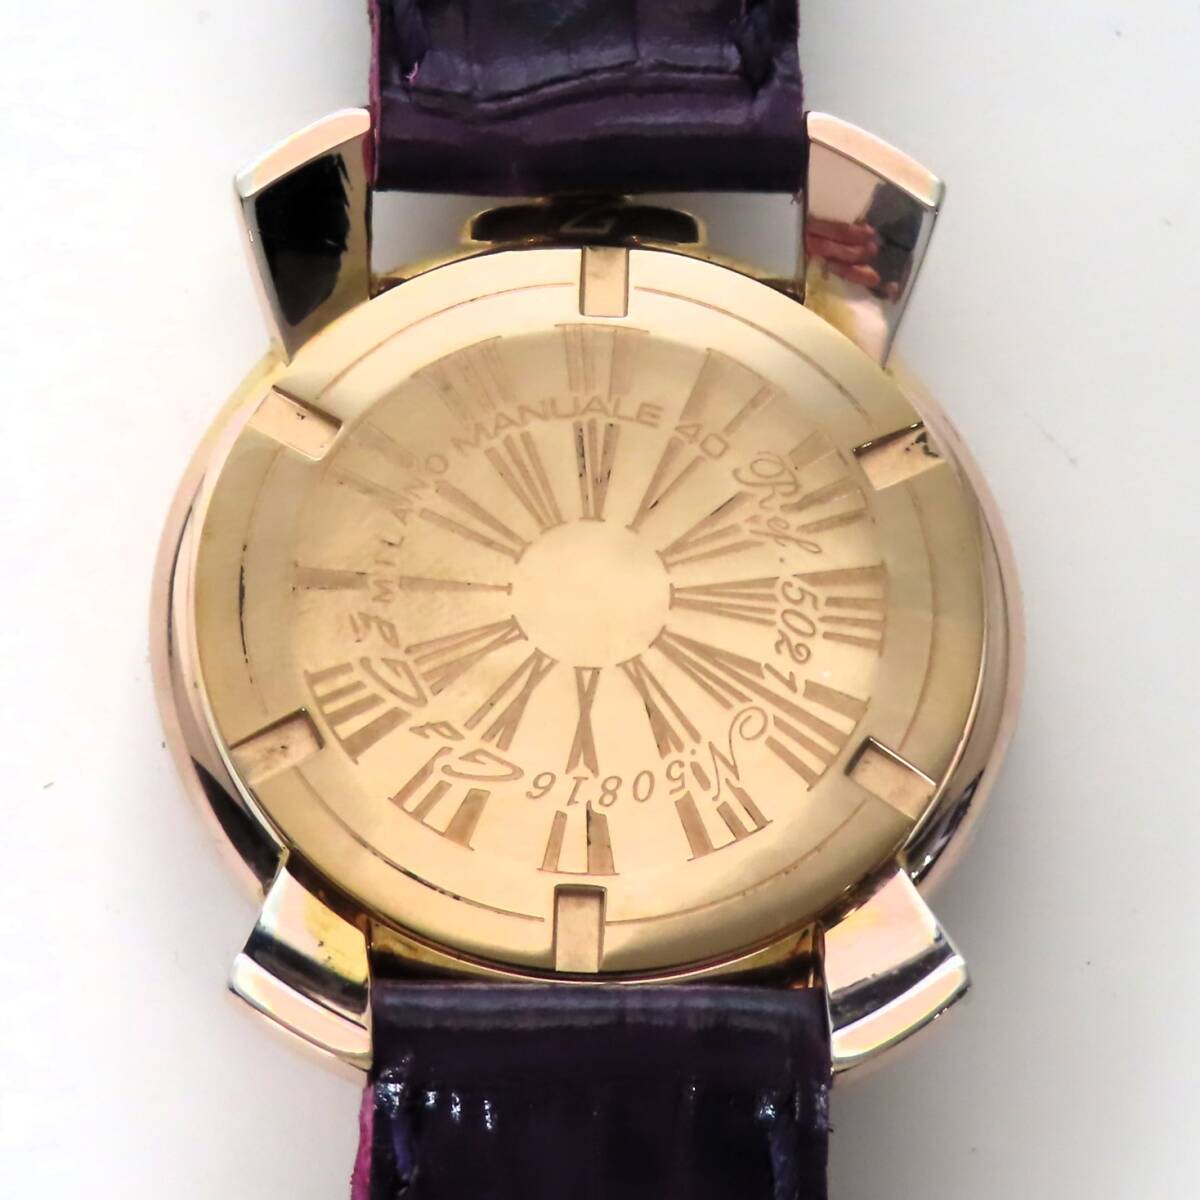  прекрасный товар работа товар GAGA MILANO MANUALE 40 GaGa Milano mana-re40 кварц наручные часы новый товар телячья кожа кожаный ремень 